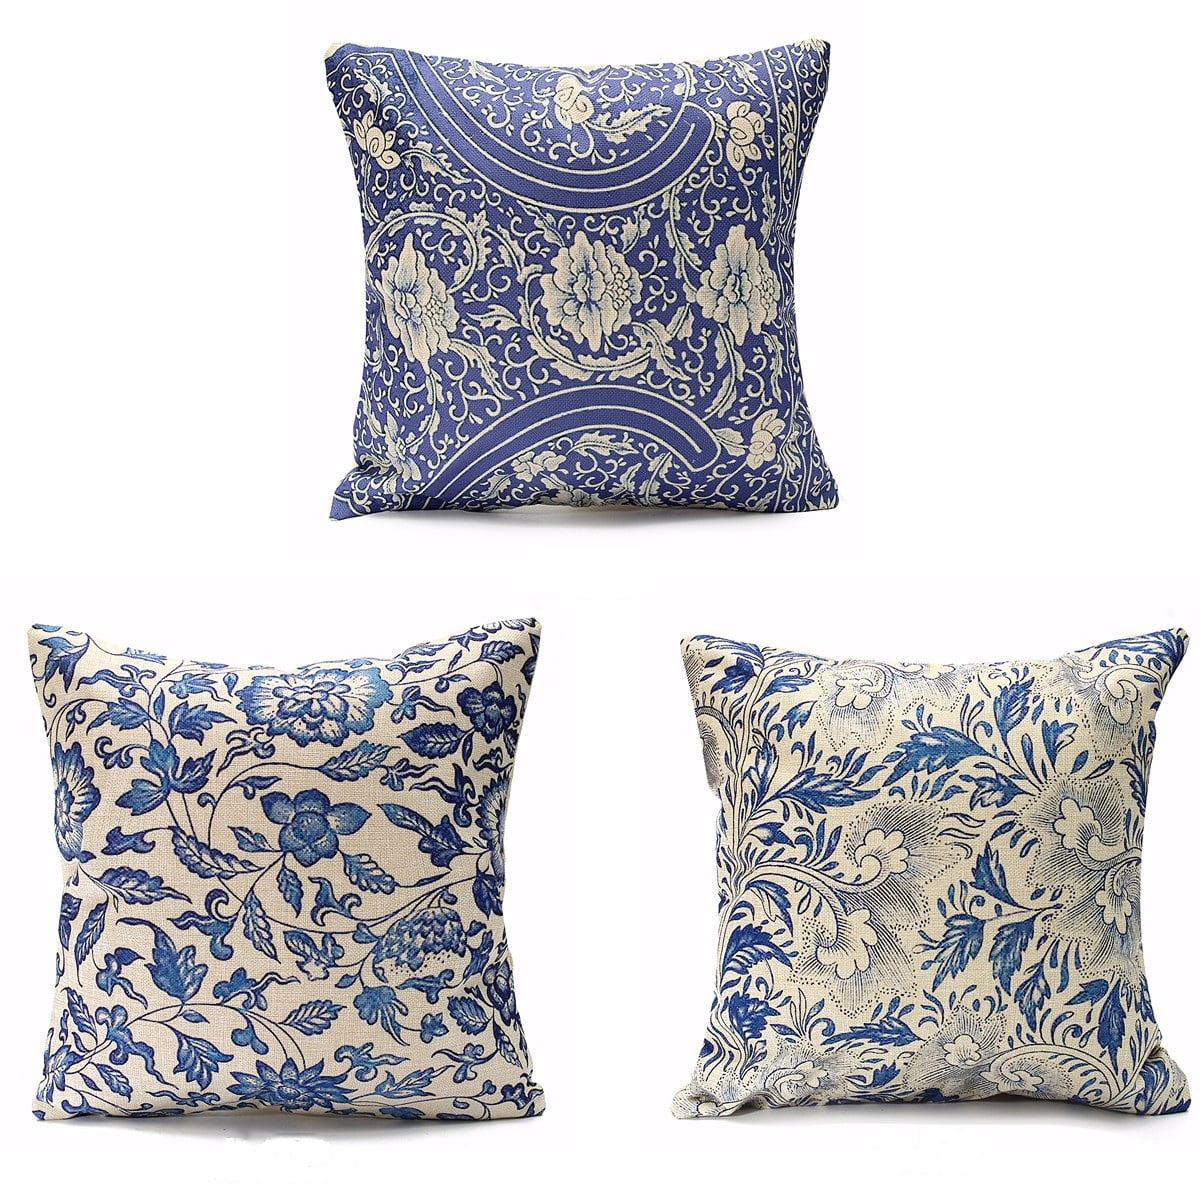 Vintage Oriental Blue Floral Linen Pillow Case Decorative Cushion Cover 18"x18" 